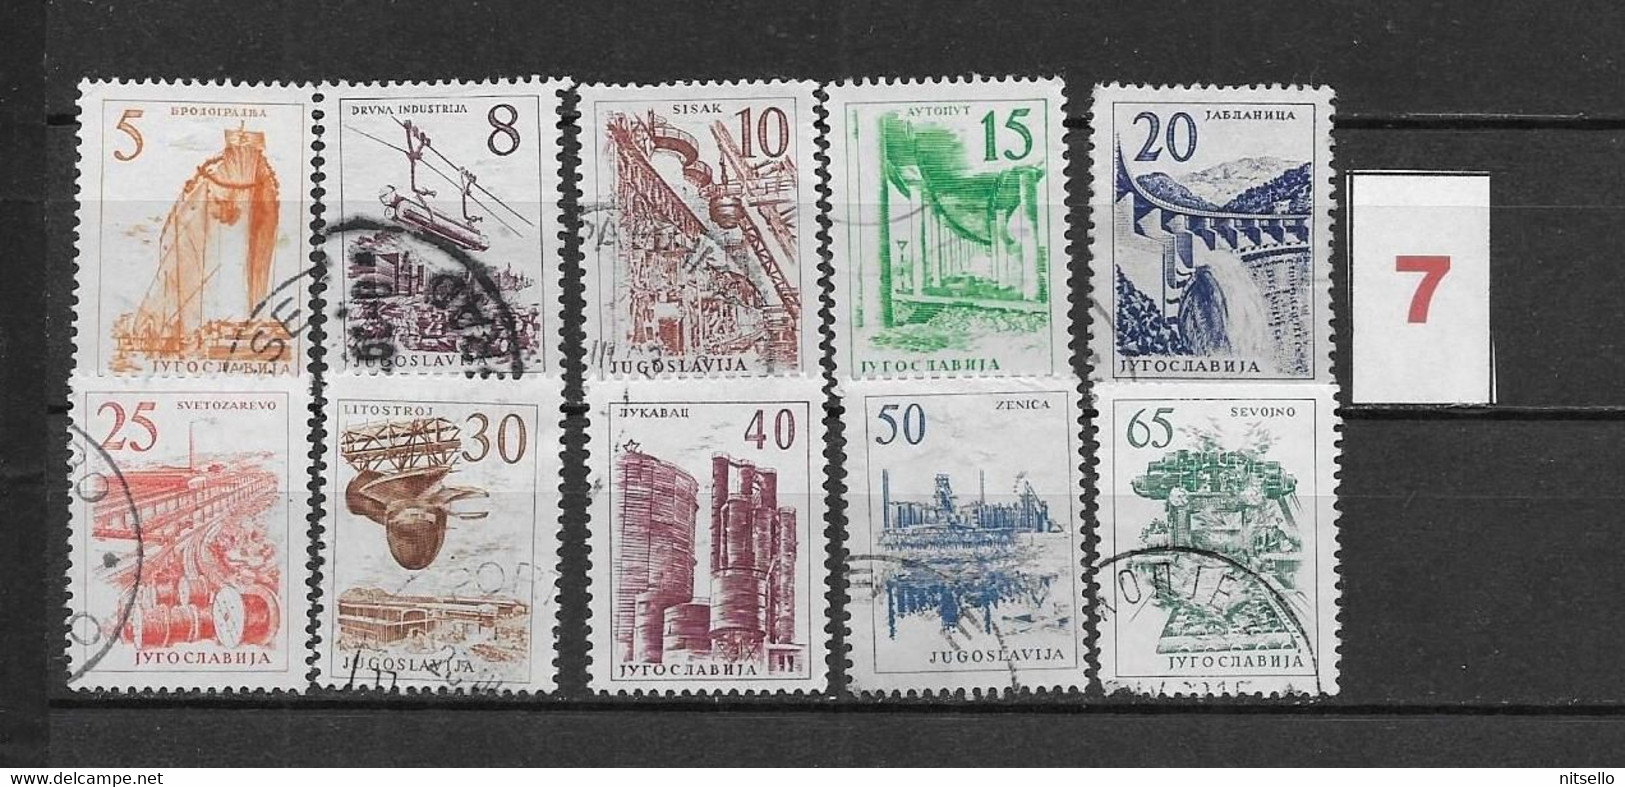 LOTE 1614  ///  YUGOSLAVIA 1958  LOTE  ¡¡¡ LIQUIDATION - JE LIQUIDE - LIQUIDACIÓN !!!! - Used Stamps